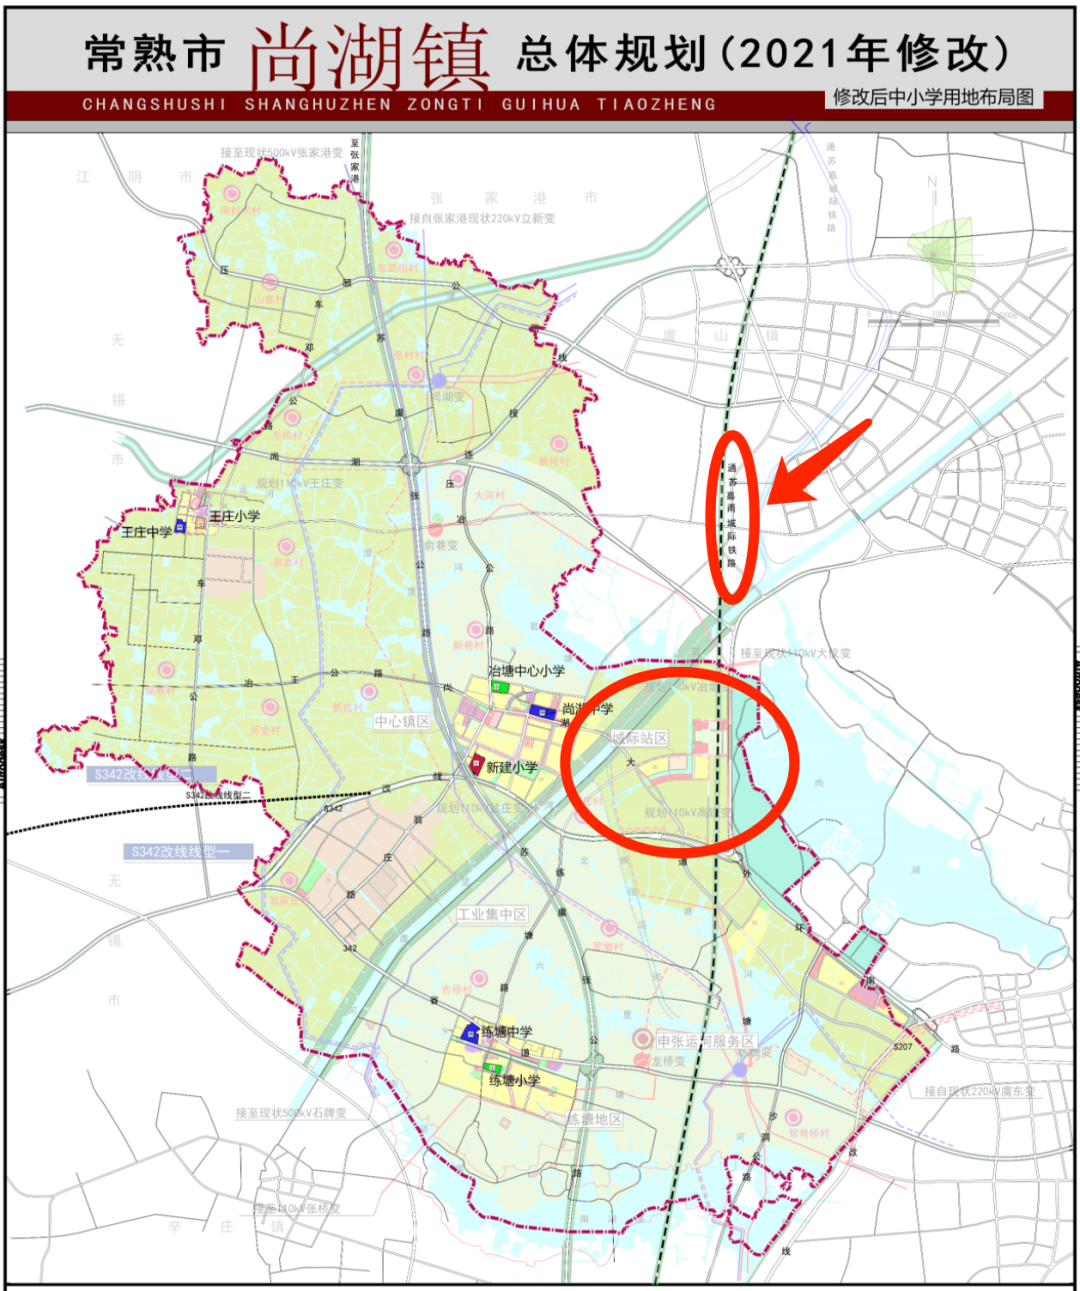 《常熟市尚湖镇总体规划(2010-2030年)》 (2021年修改)批前公示结束